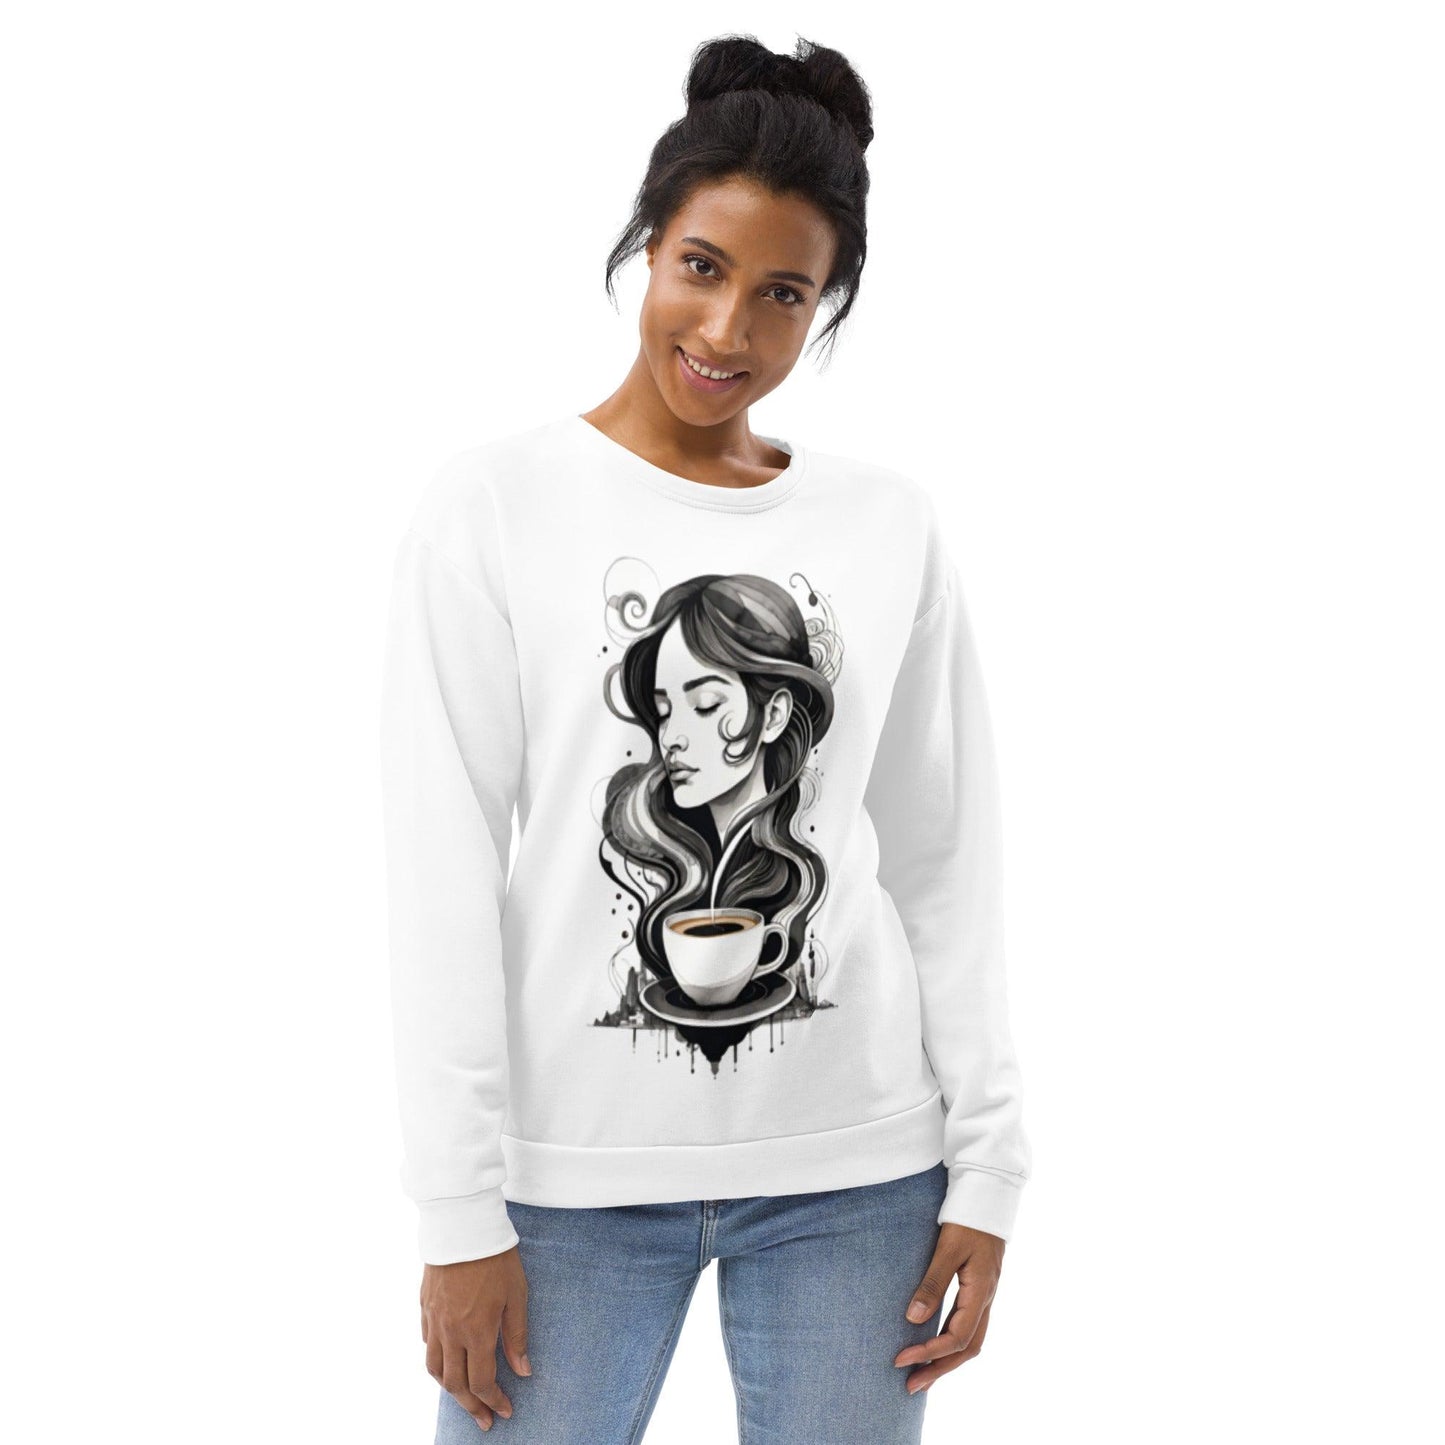 Love Coffee - Womens Sweatshirt - iSAW Company